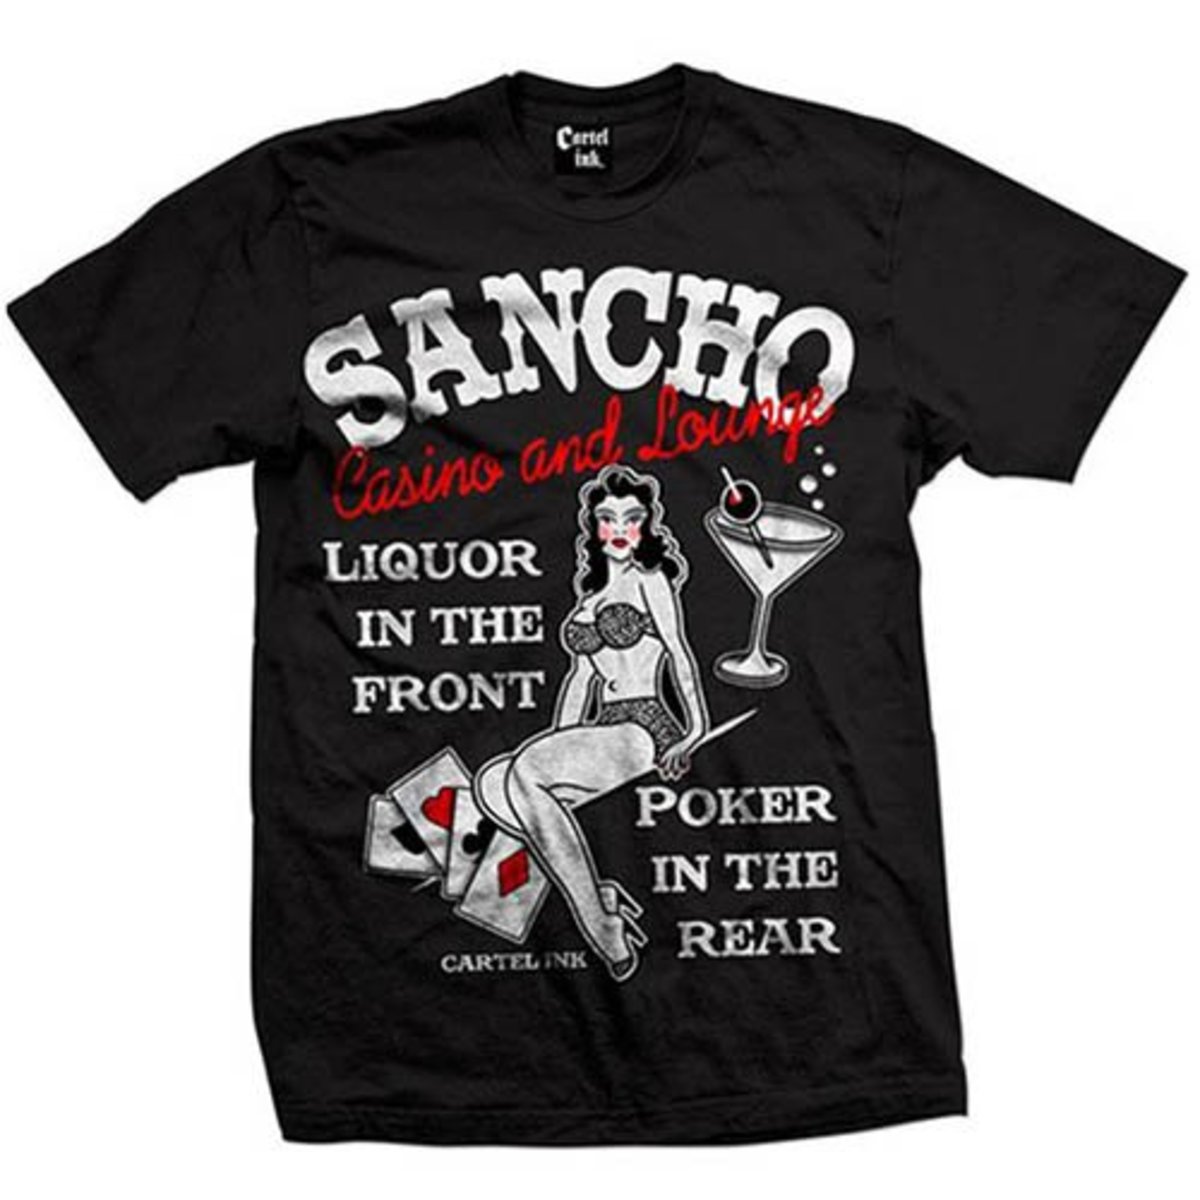 Sancho Casino og Lounge T -shirt Cartel Ink